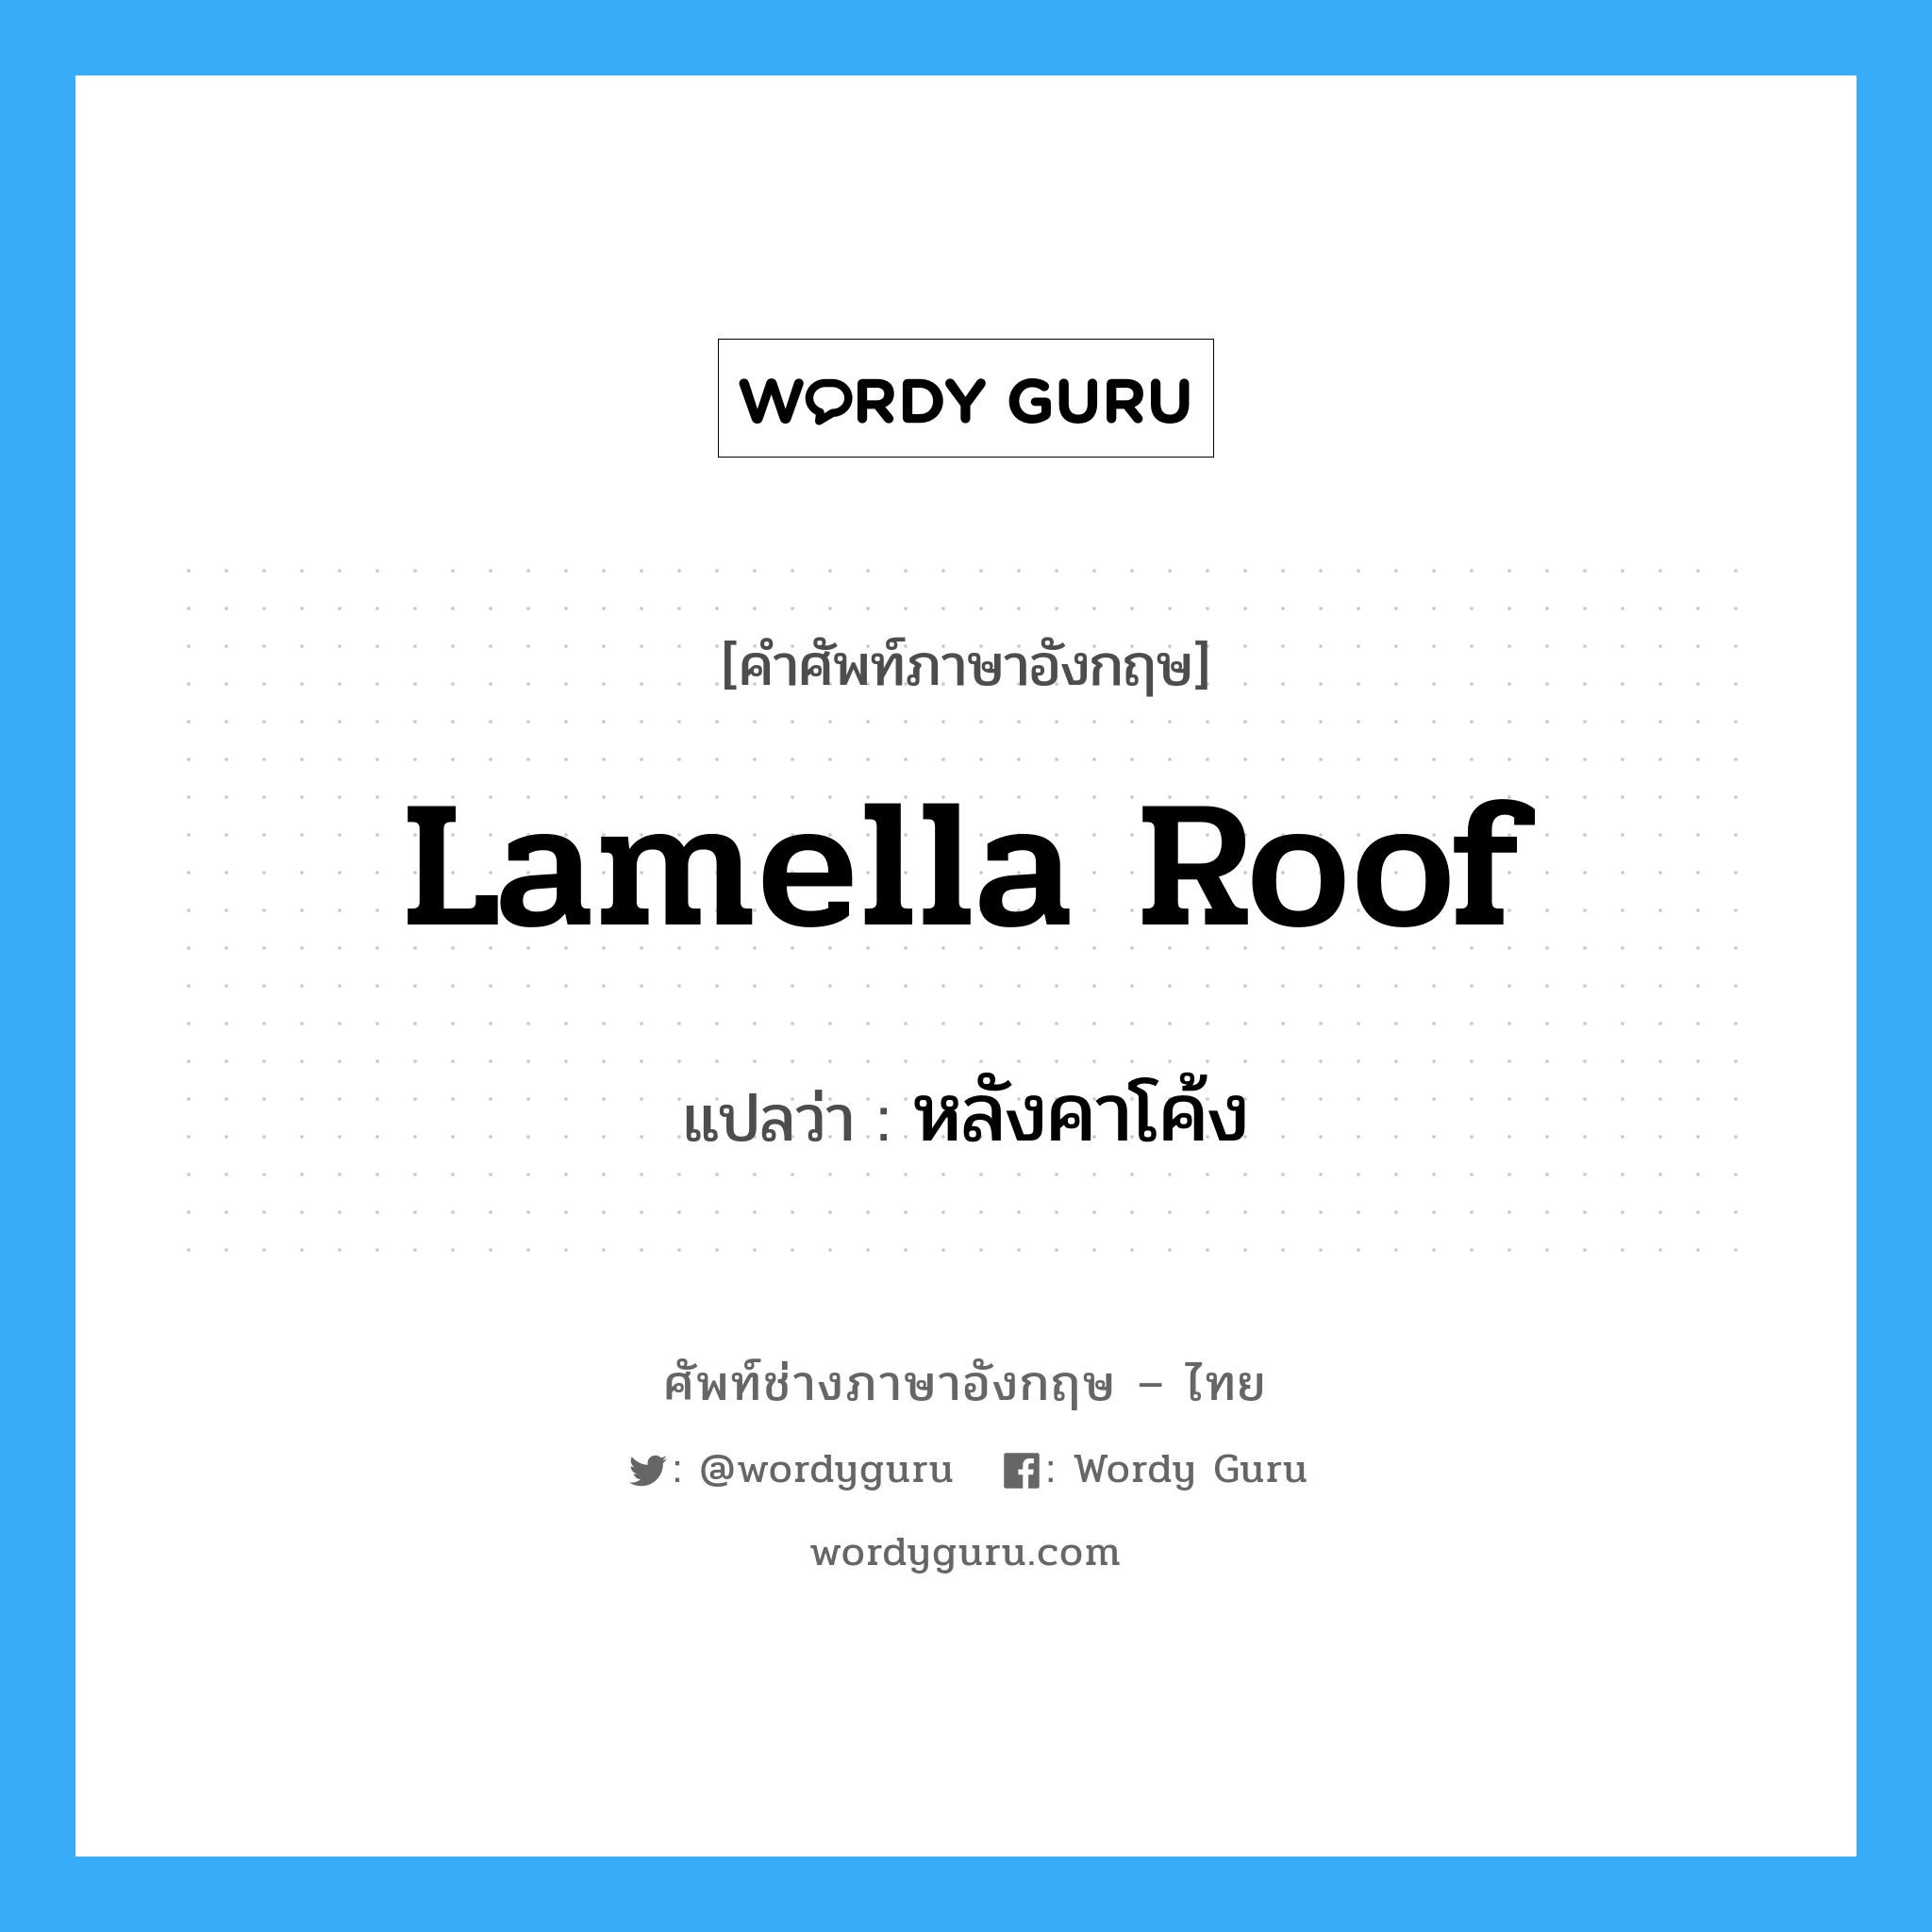 lamella roof แปลว่า?, คำศัพท์ช่างภาษาอังกฤษ - ไทย lamella roof คำศัพท์ภาษาอังกฤษ lamella roof แปลว่า หลังคาโค้ง